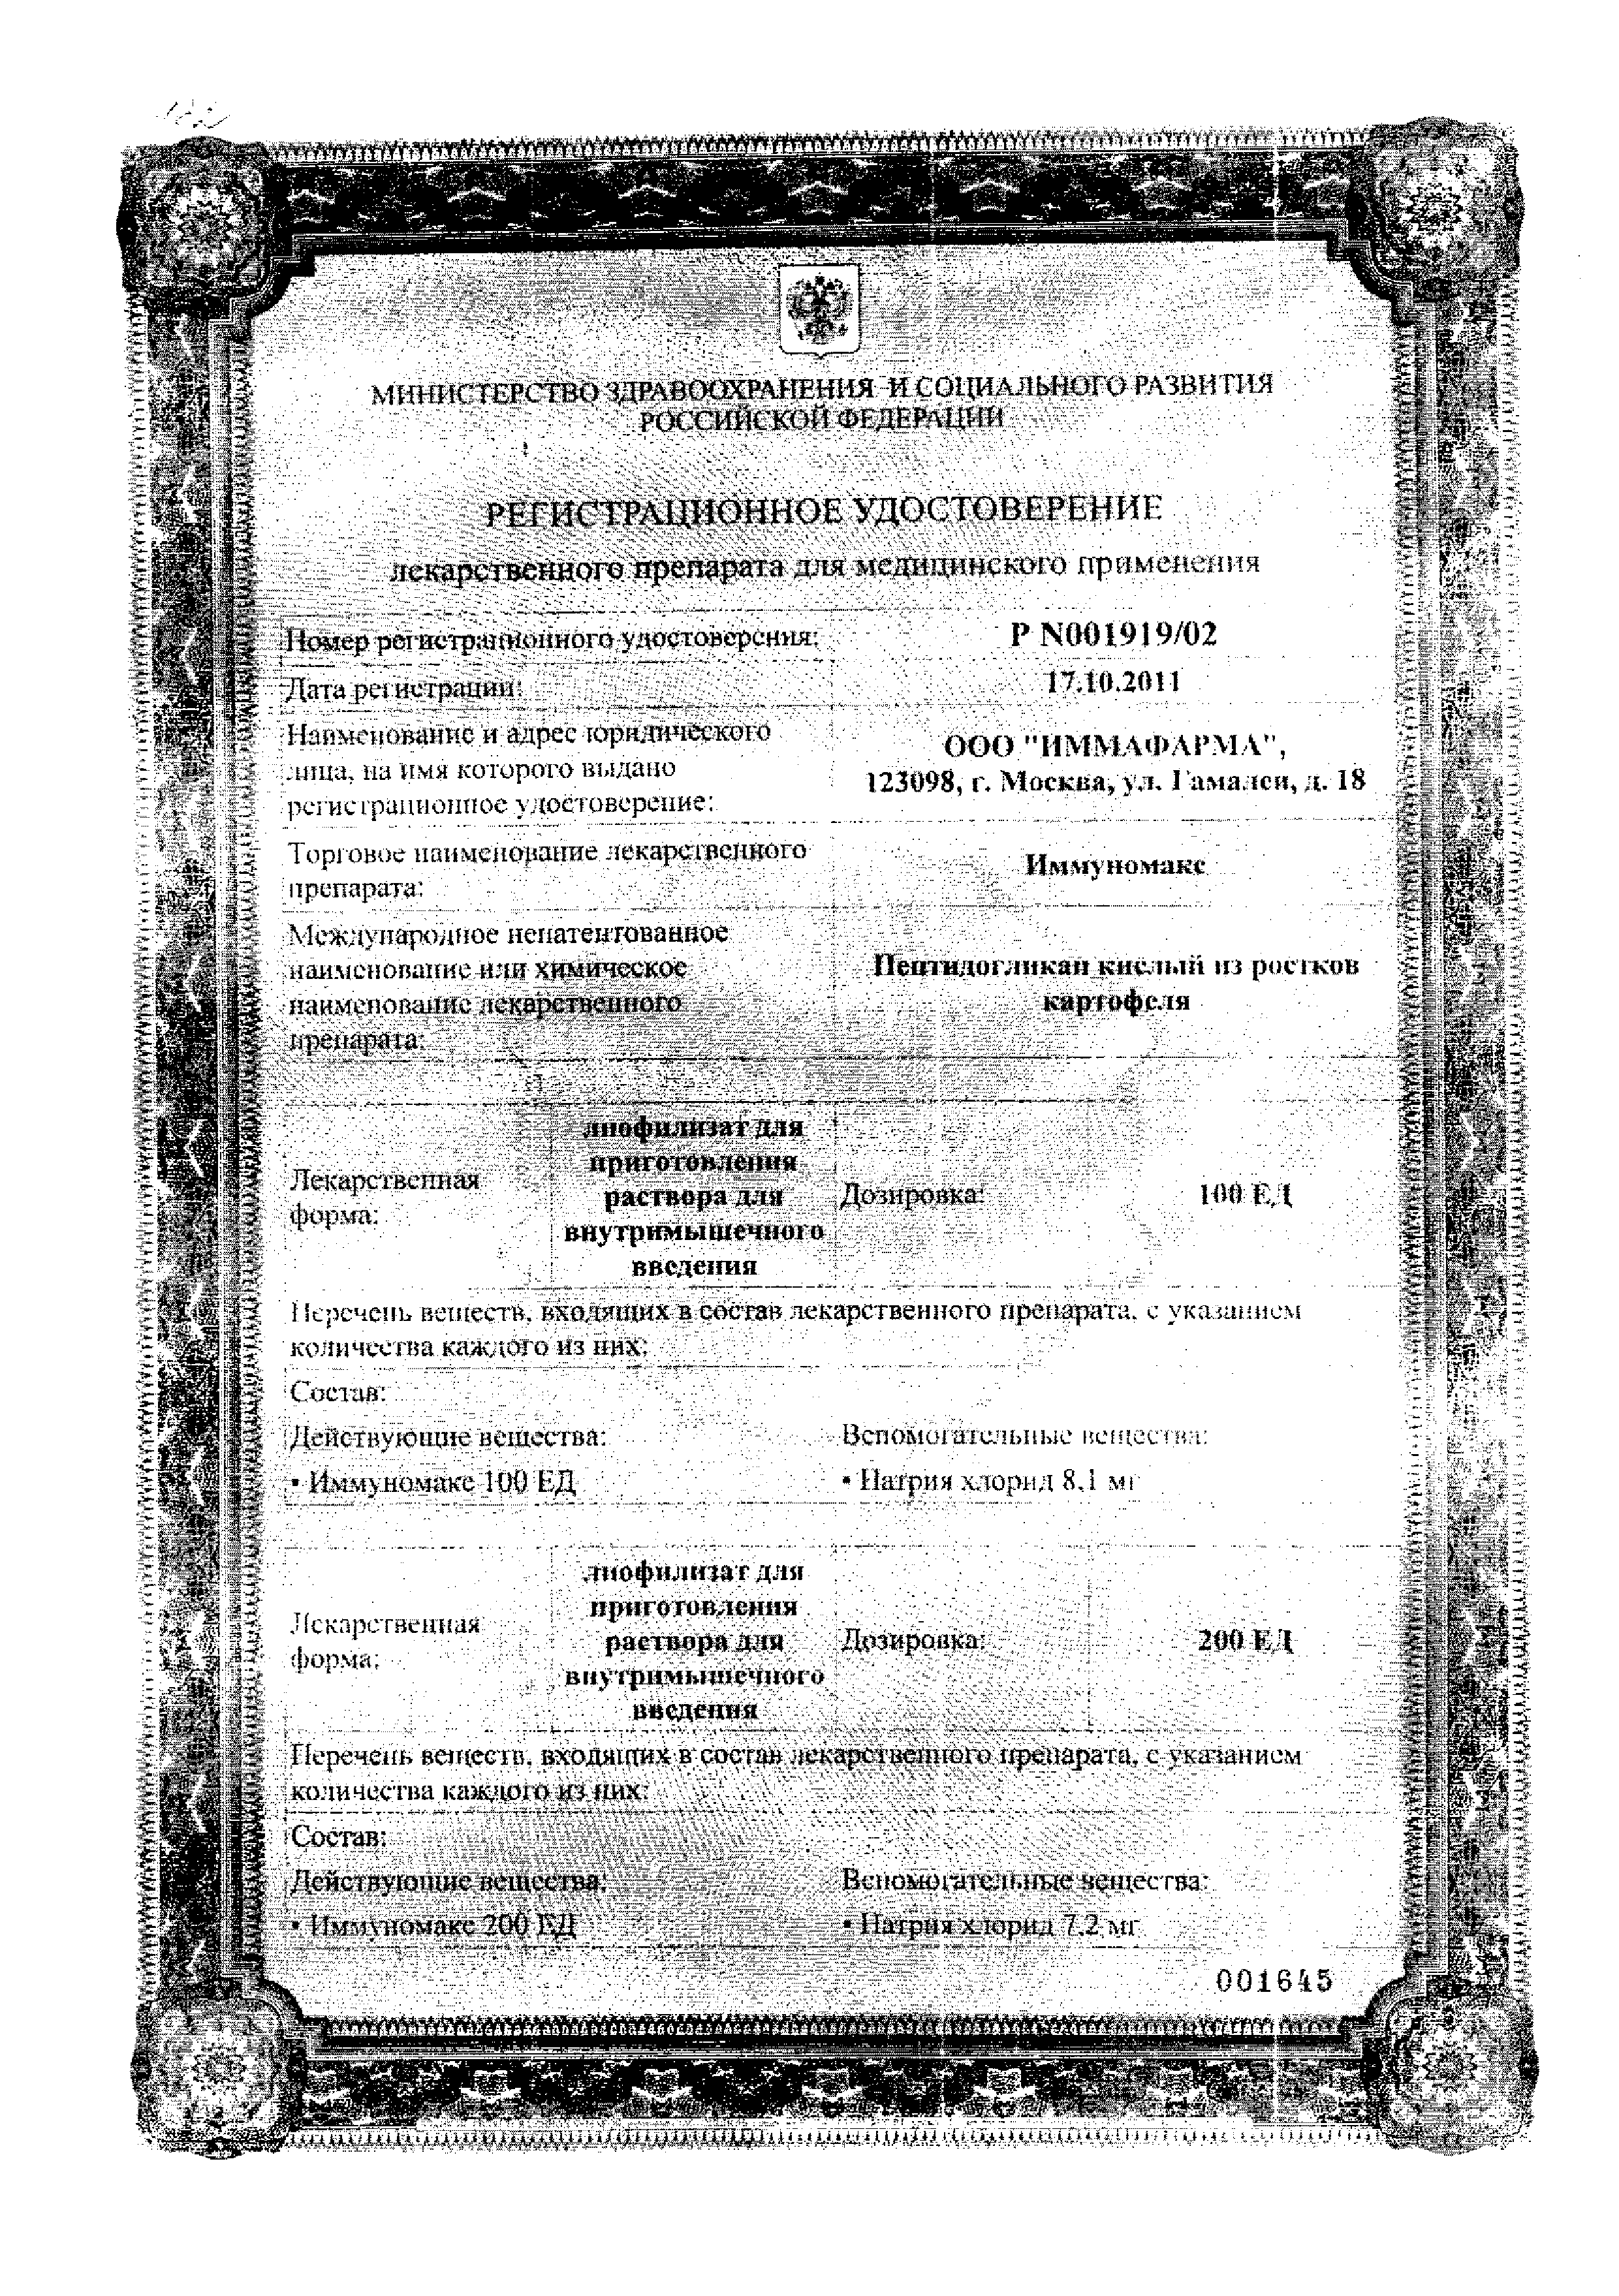 Иммуномакс сертификат